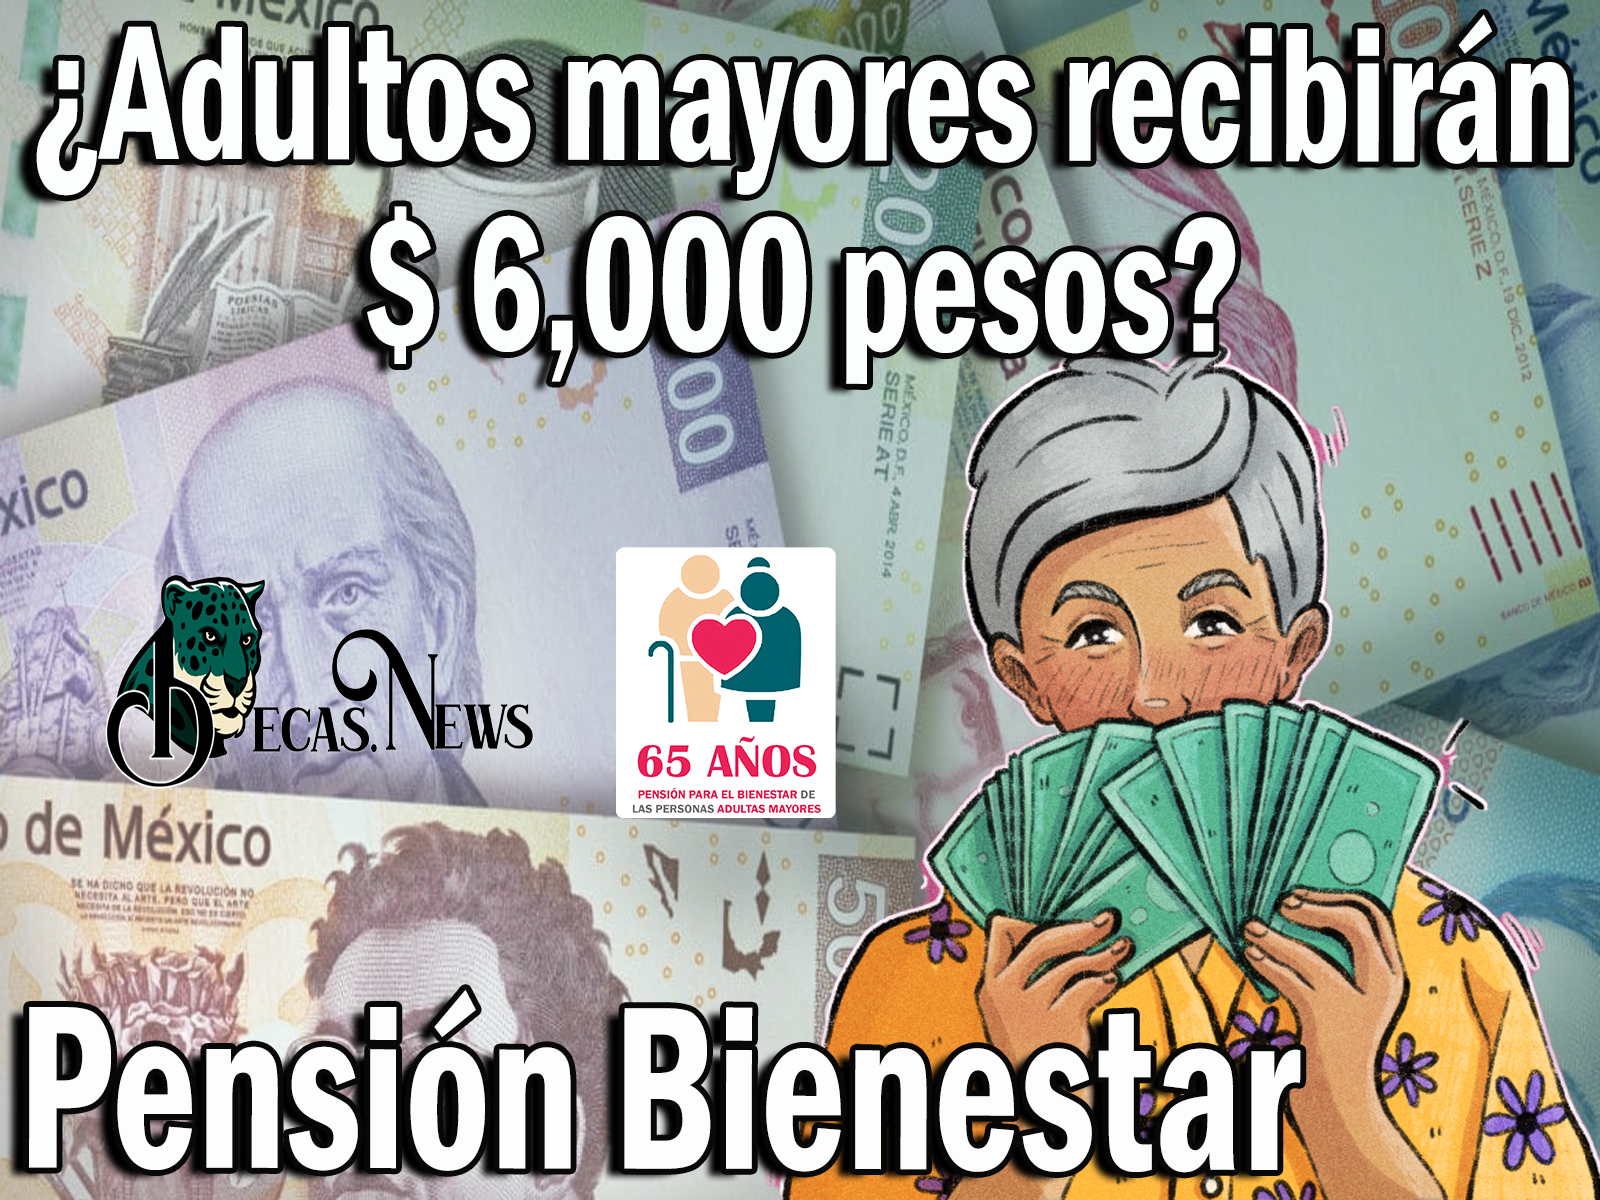 Pensión Bienestar: ¿Adultos mayores recibirán $ 6,000 pesos? ¡¡Atención Pensionados!!  